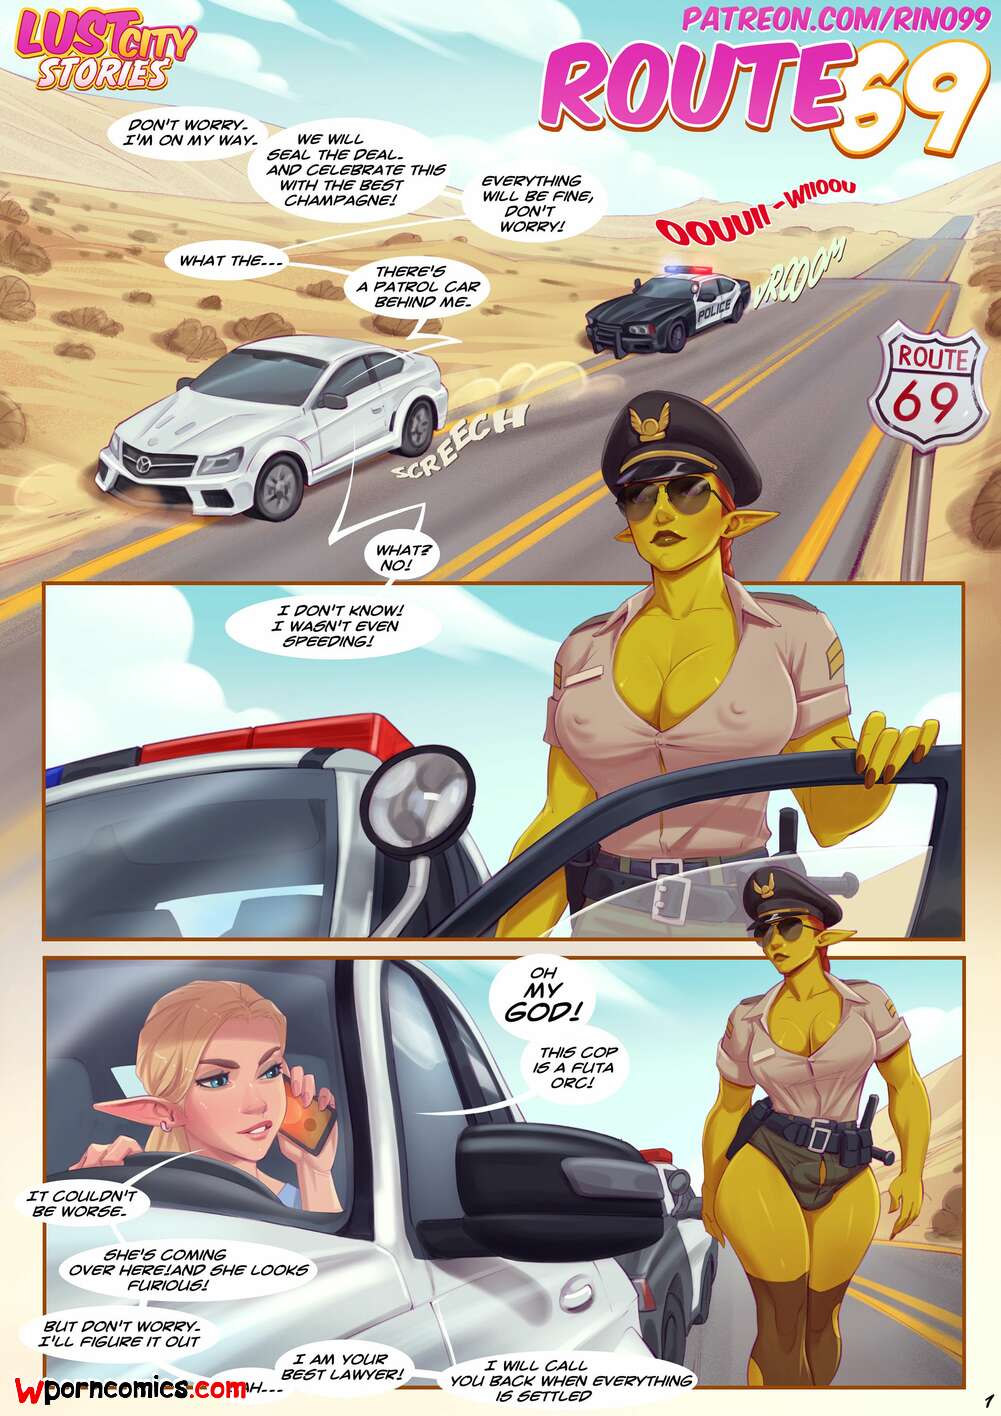 âœ…ï¸ Porn comic Route 69. Female. Chapter 1. Rino99. Sex comic cop girl  stopped | Porn comics in English for adults only | sexkomix2.com